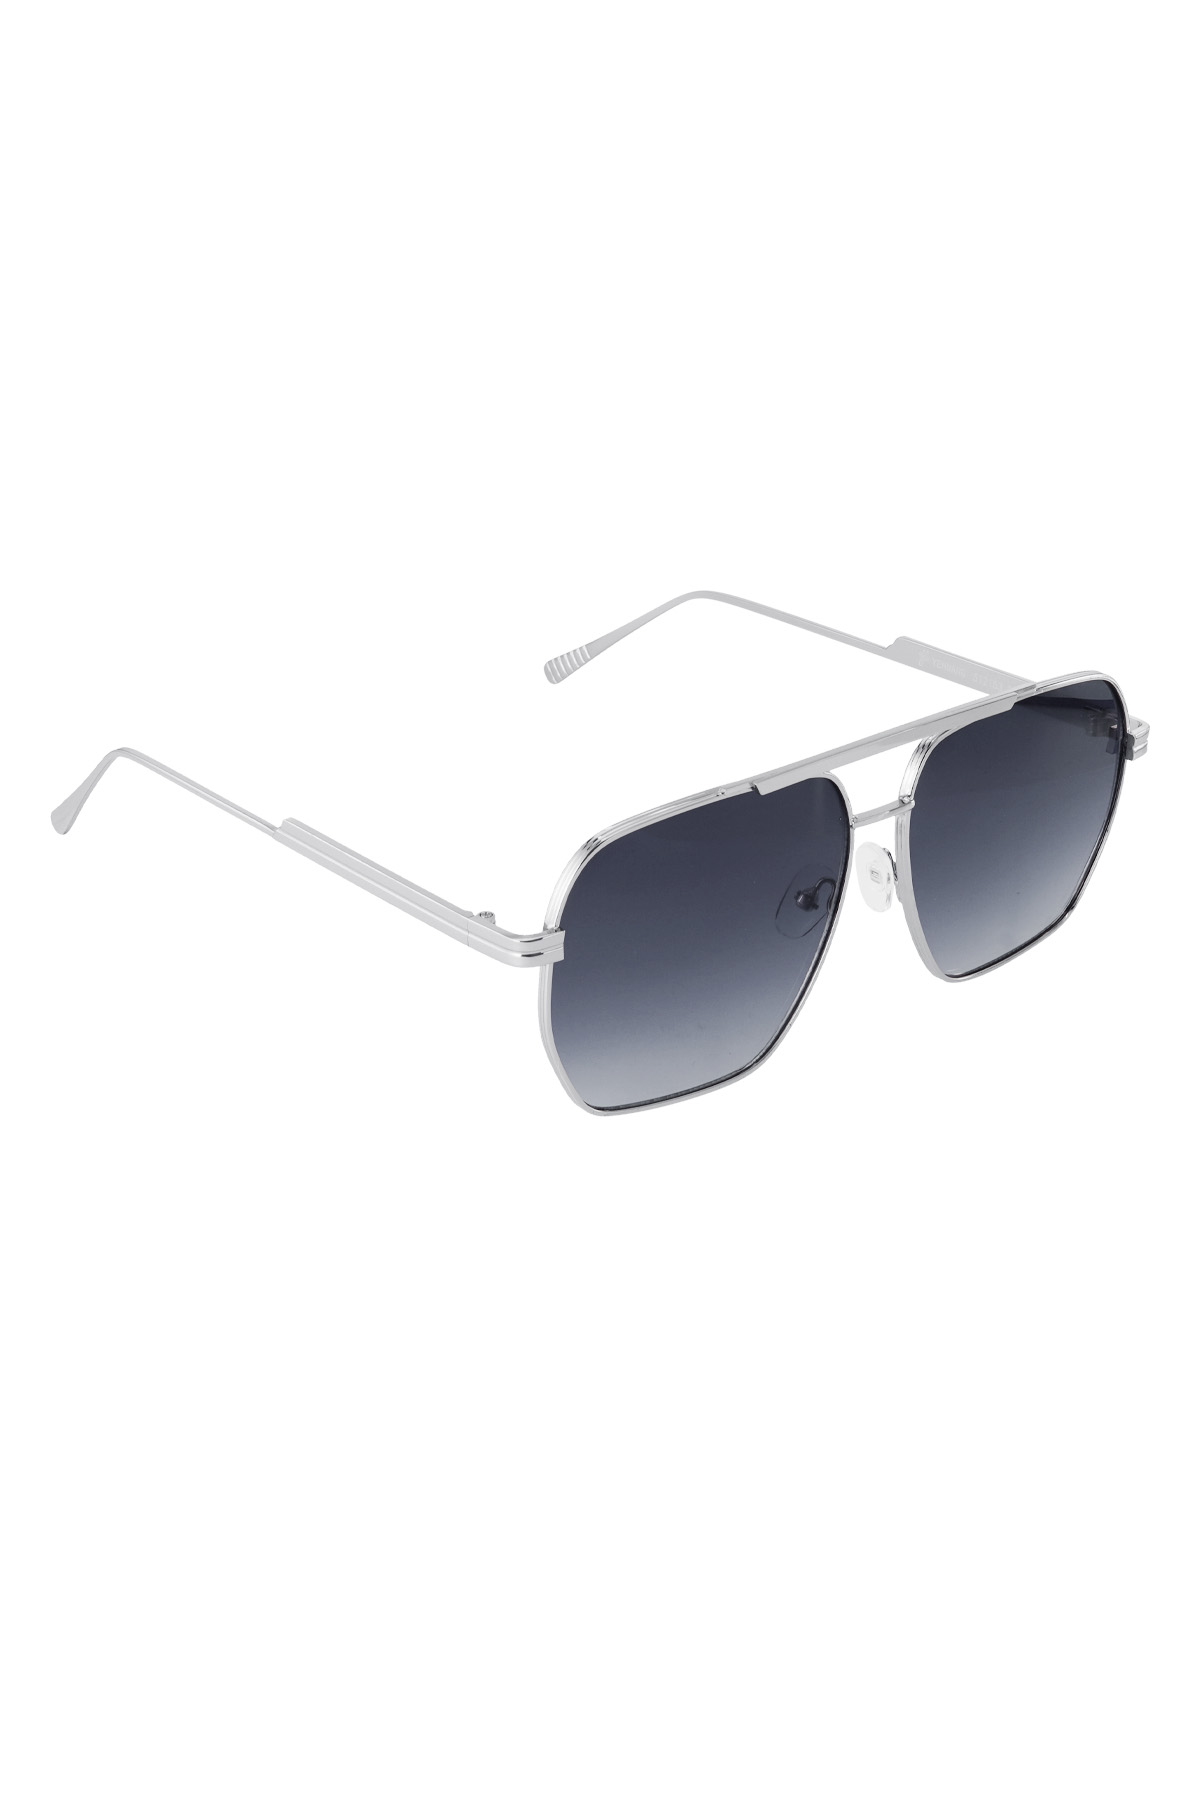 Metal yazlık güneş gözlüğü - Siyah ve gümüş h5 